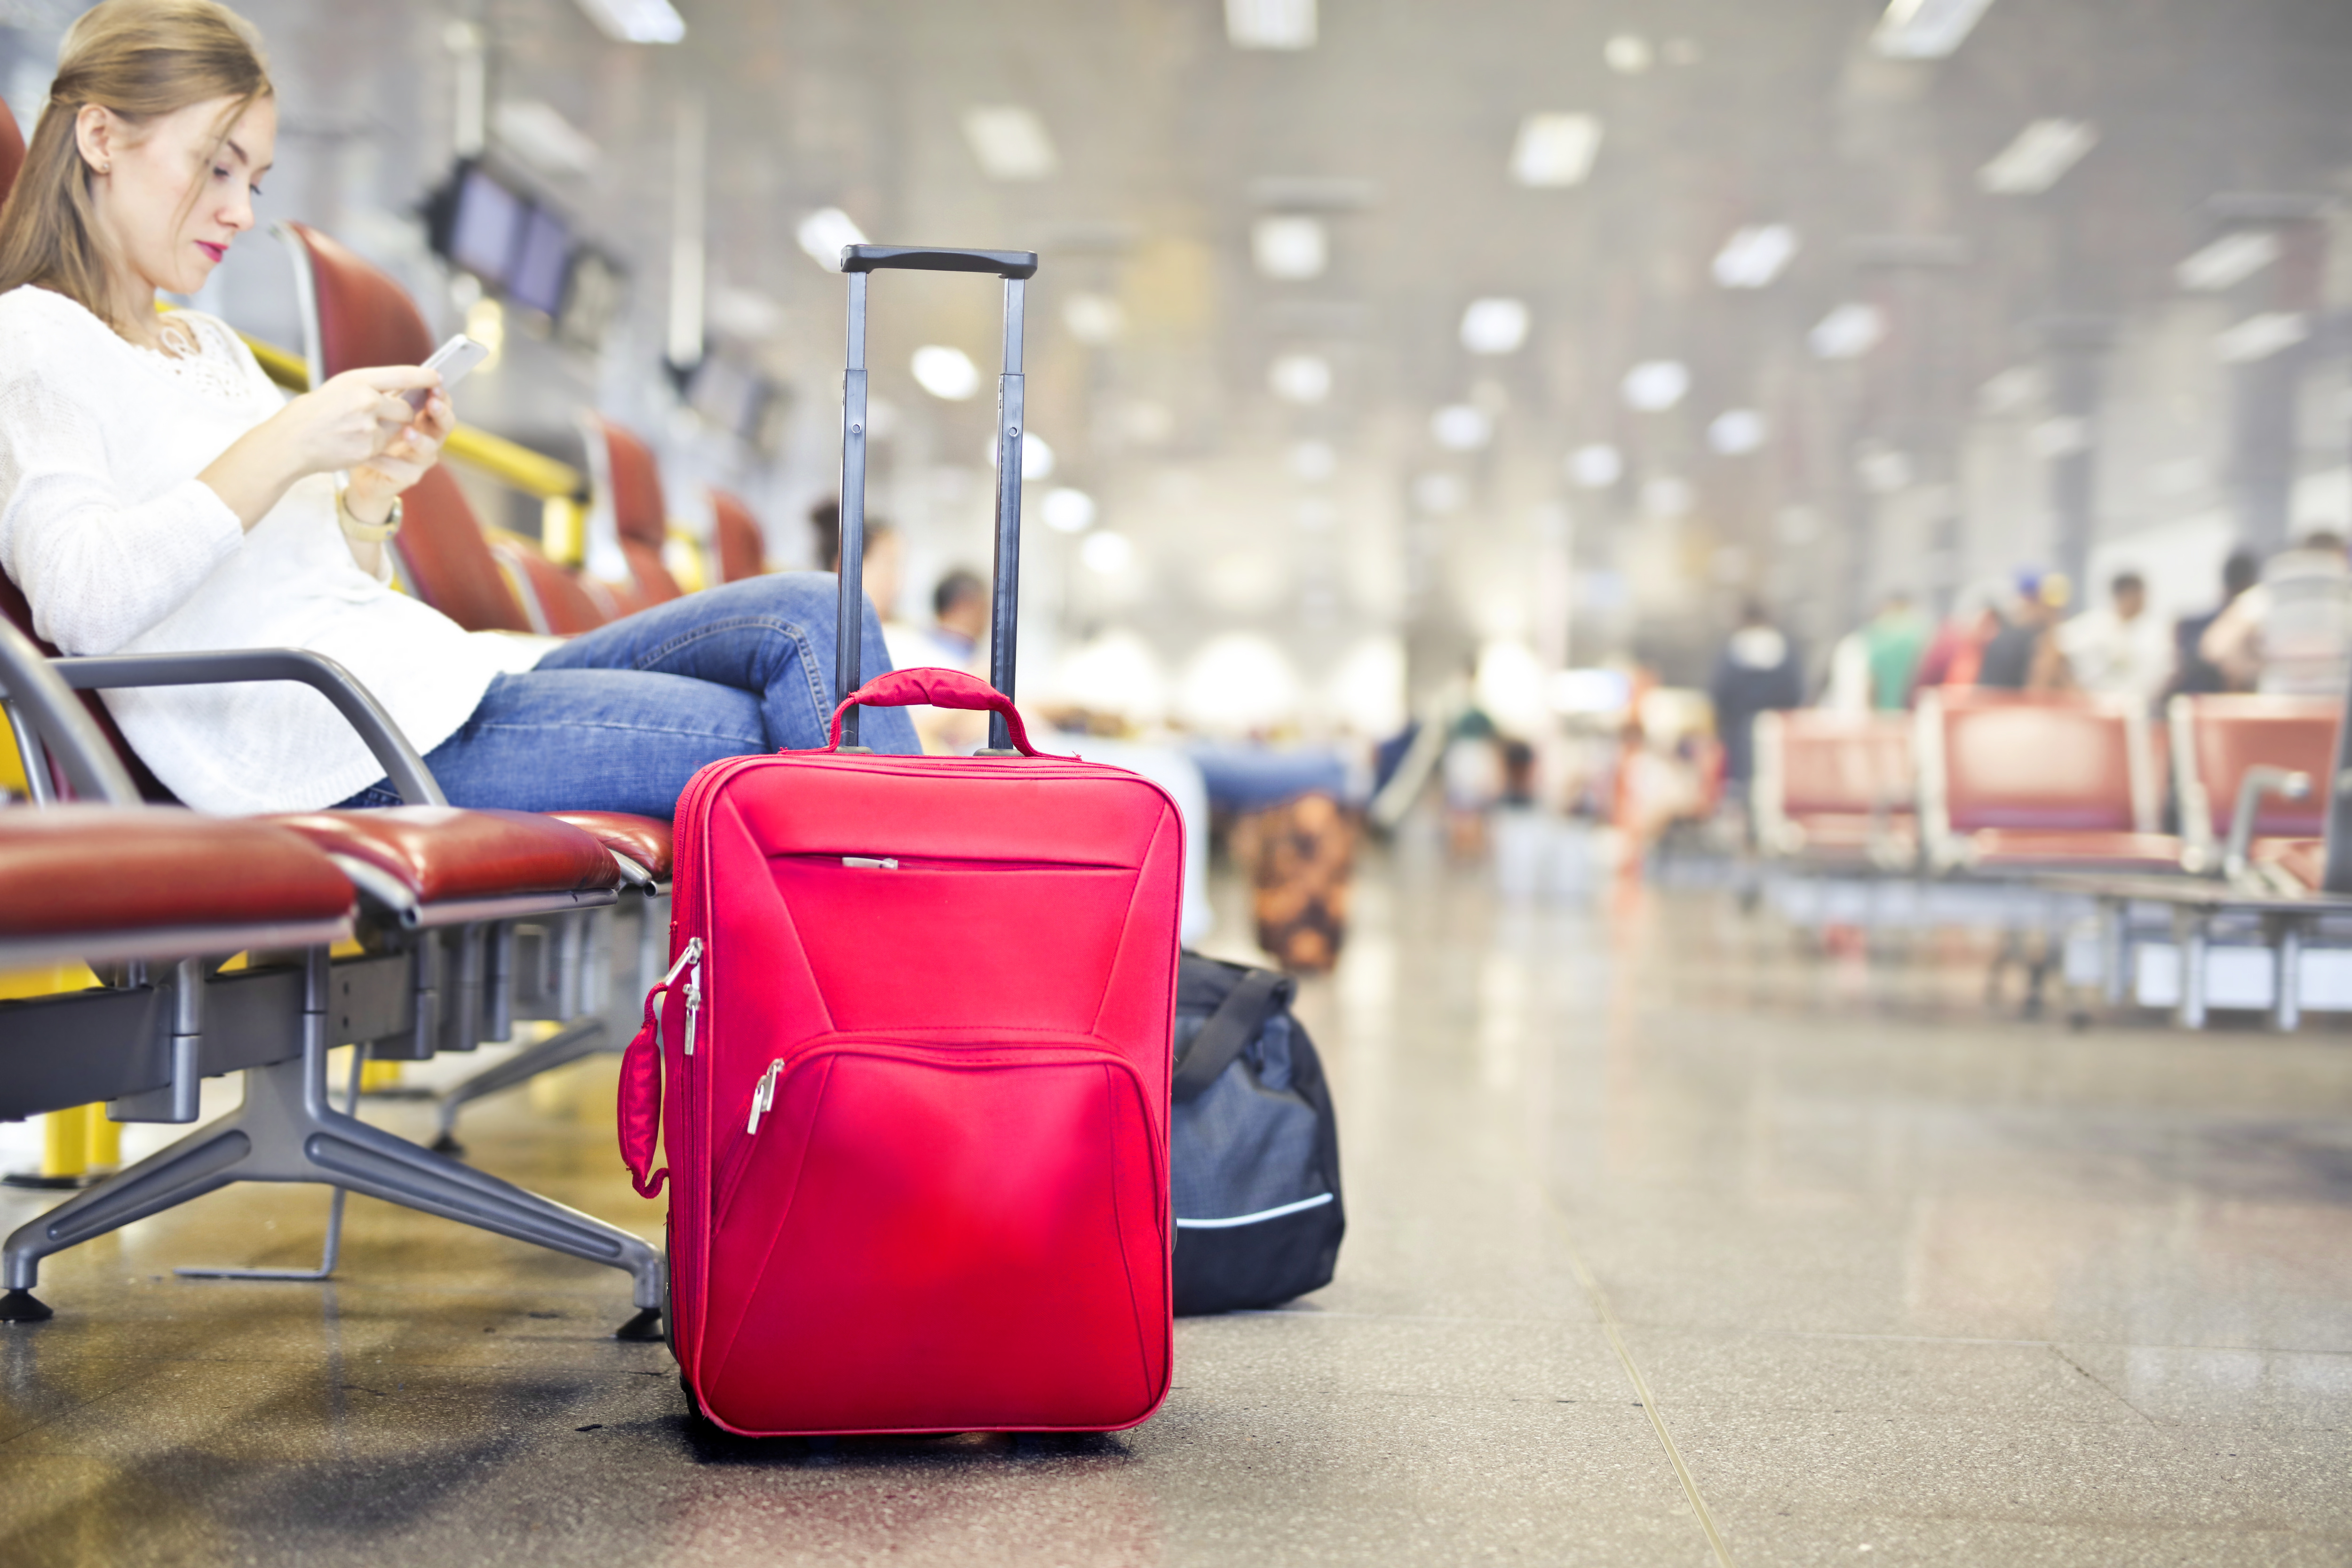 نصائح للمسافرين للاستفادة من الوقت أثناء الانتظار في المطار